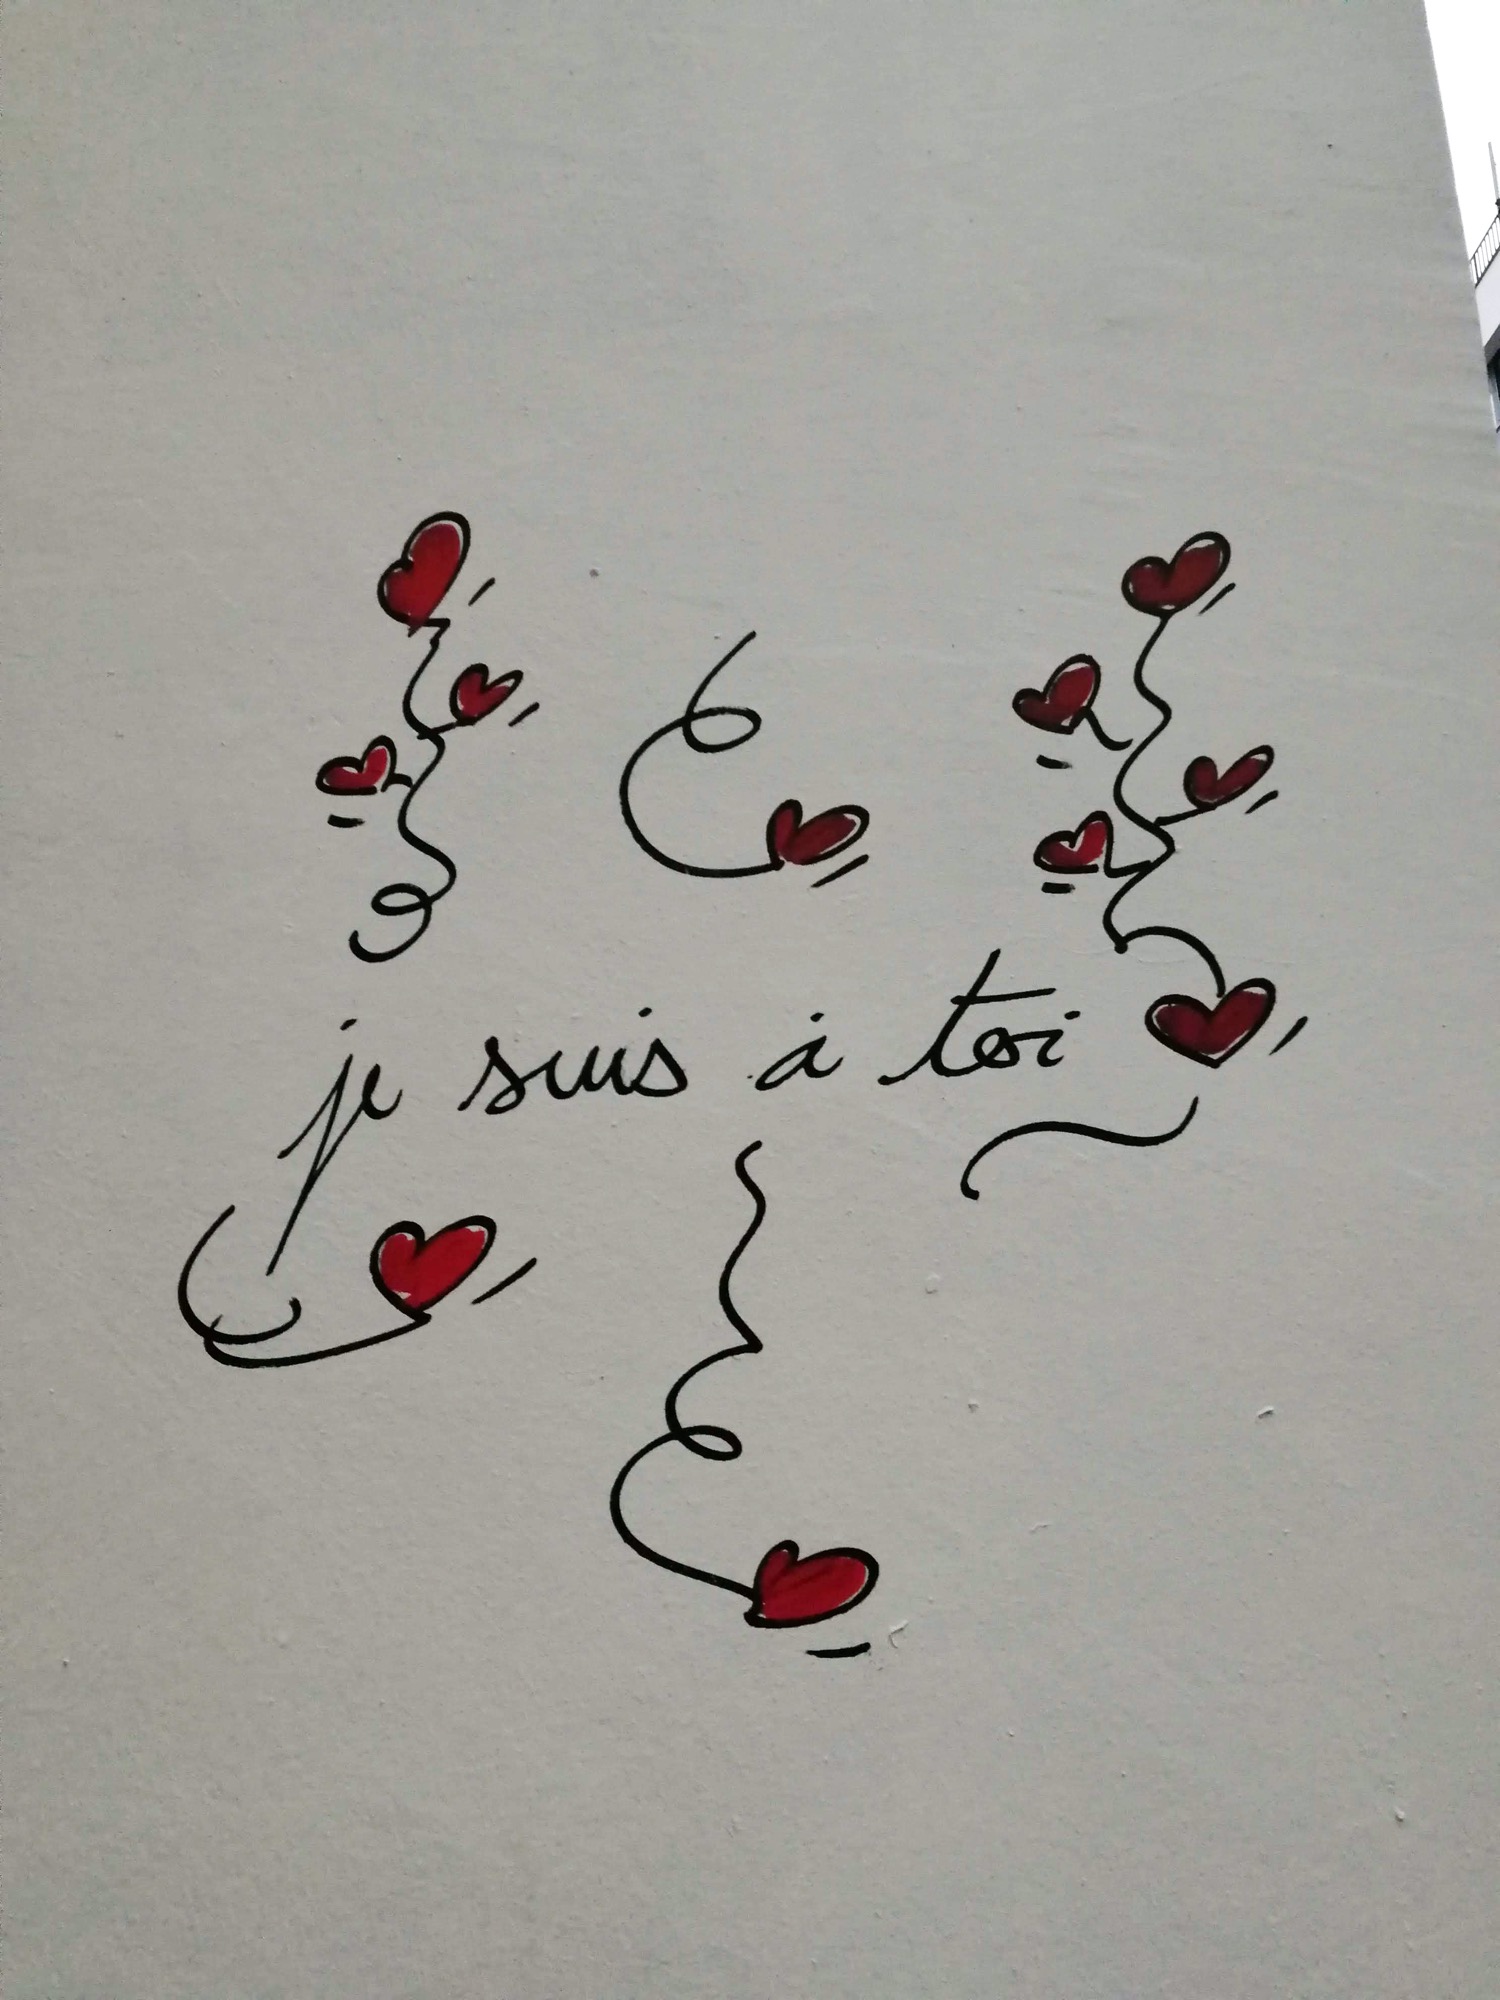 Graffiti 715  de Inlove capturé par Rabot à Paris France